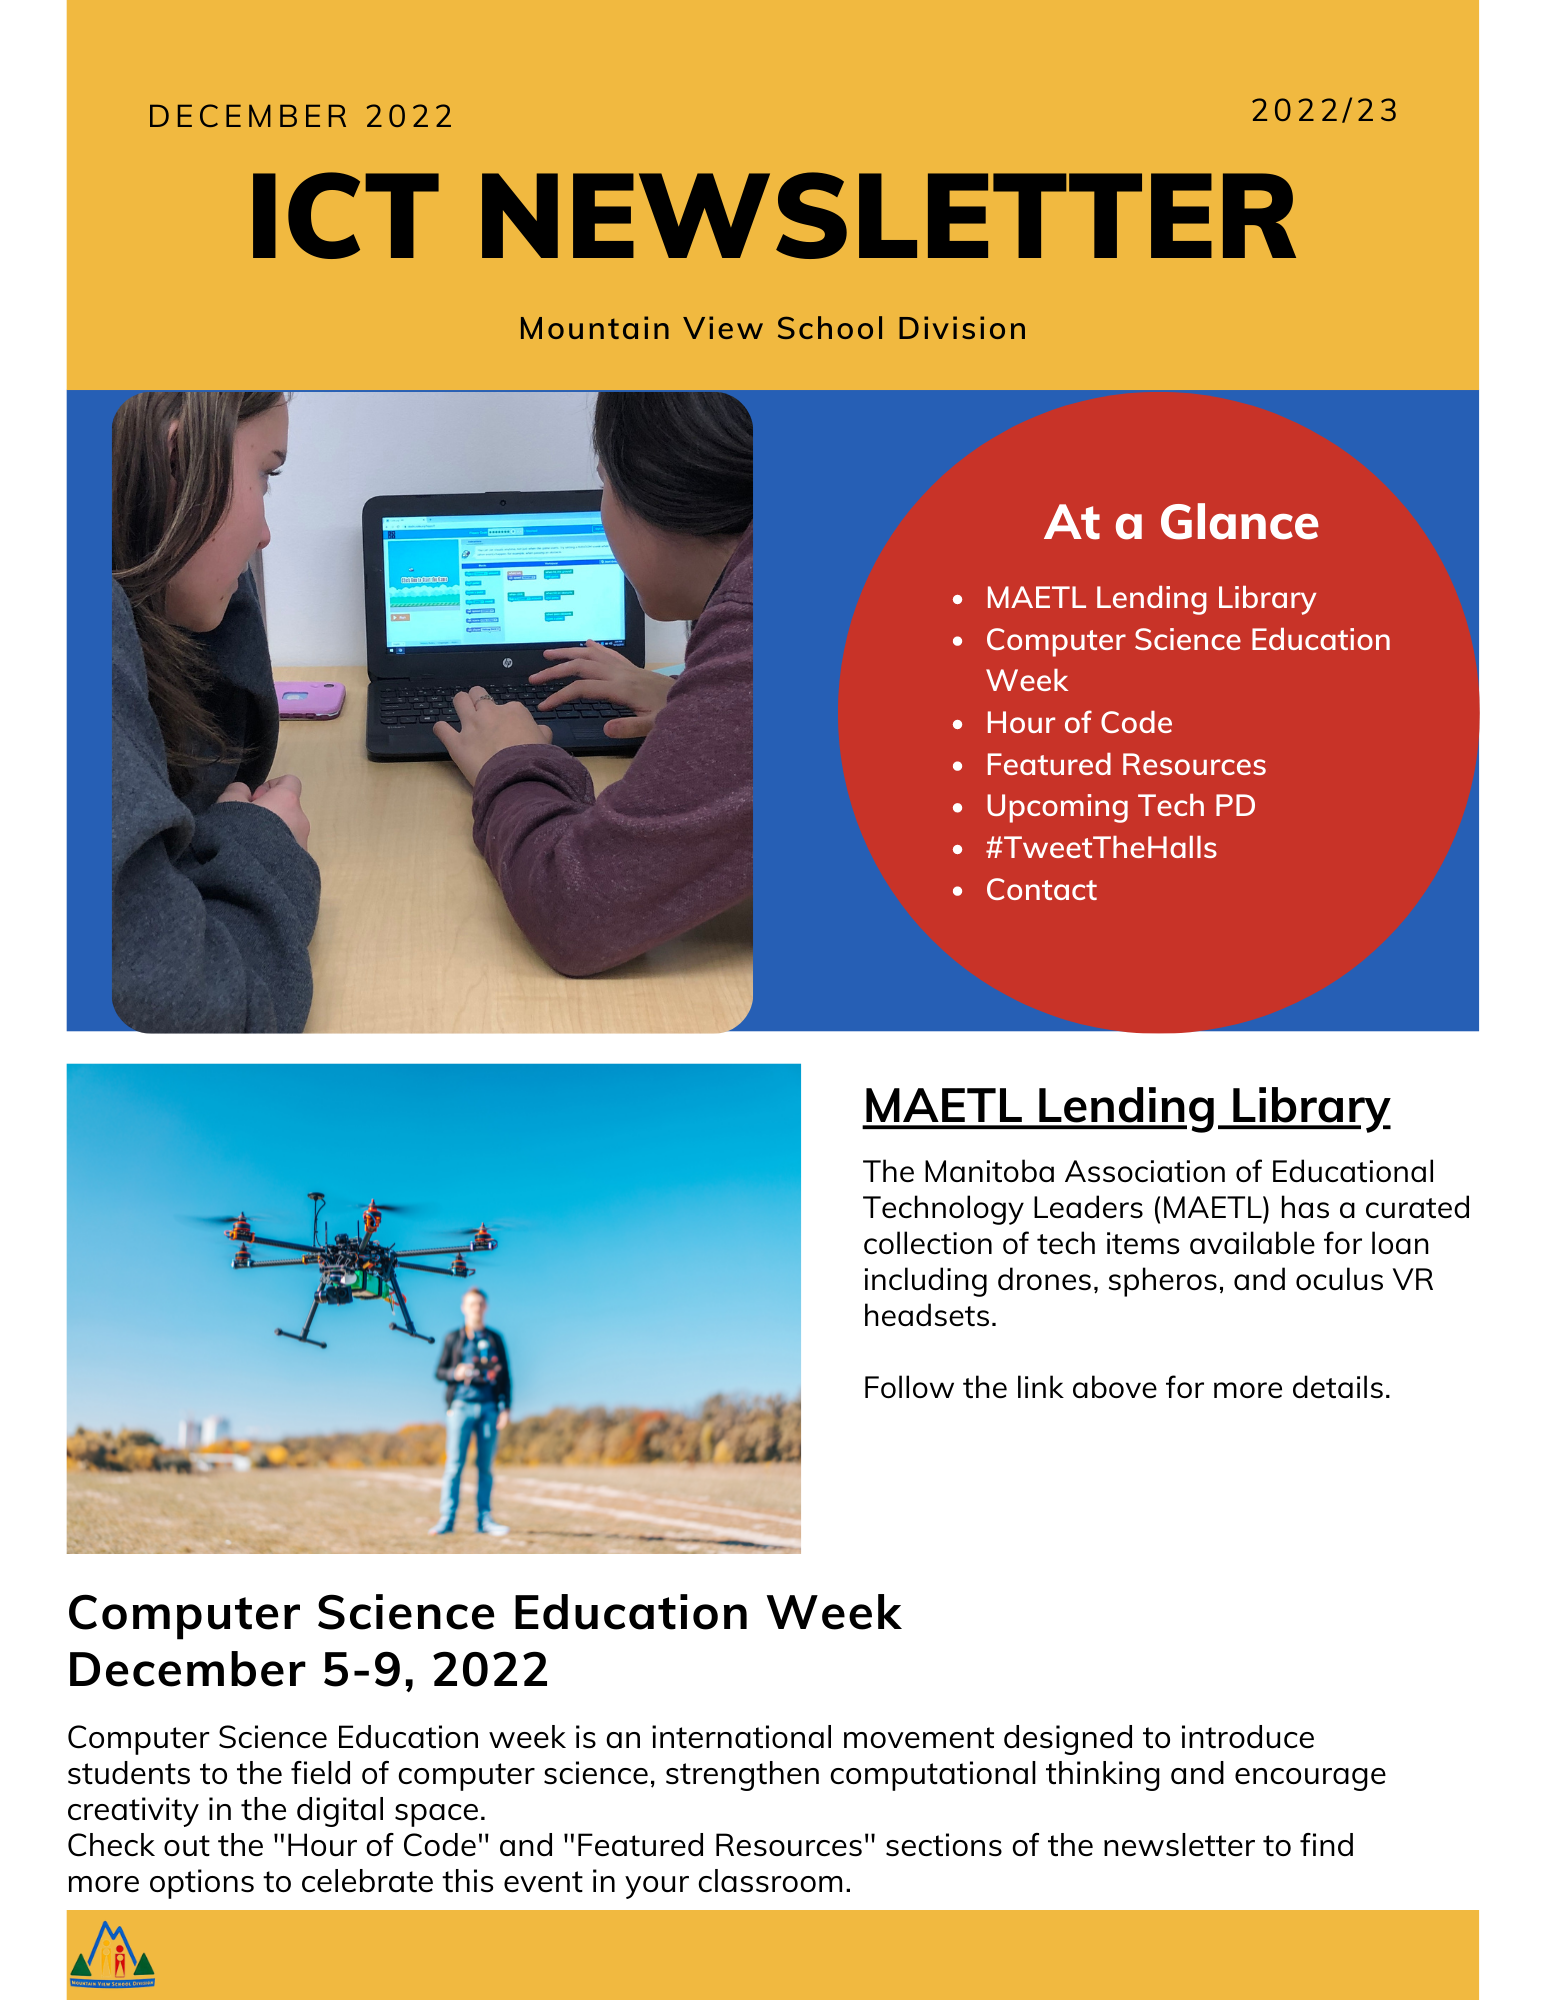 December ICT Newsletter